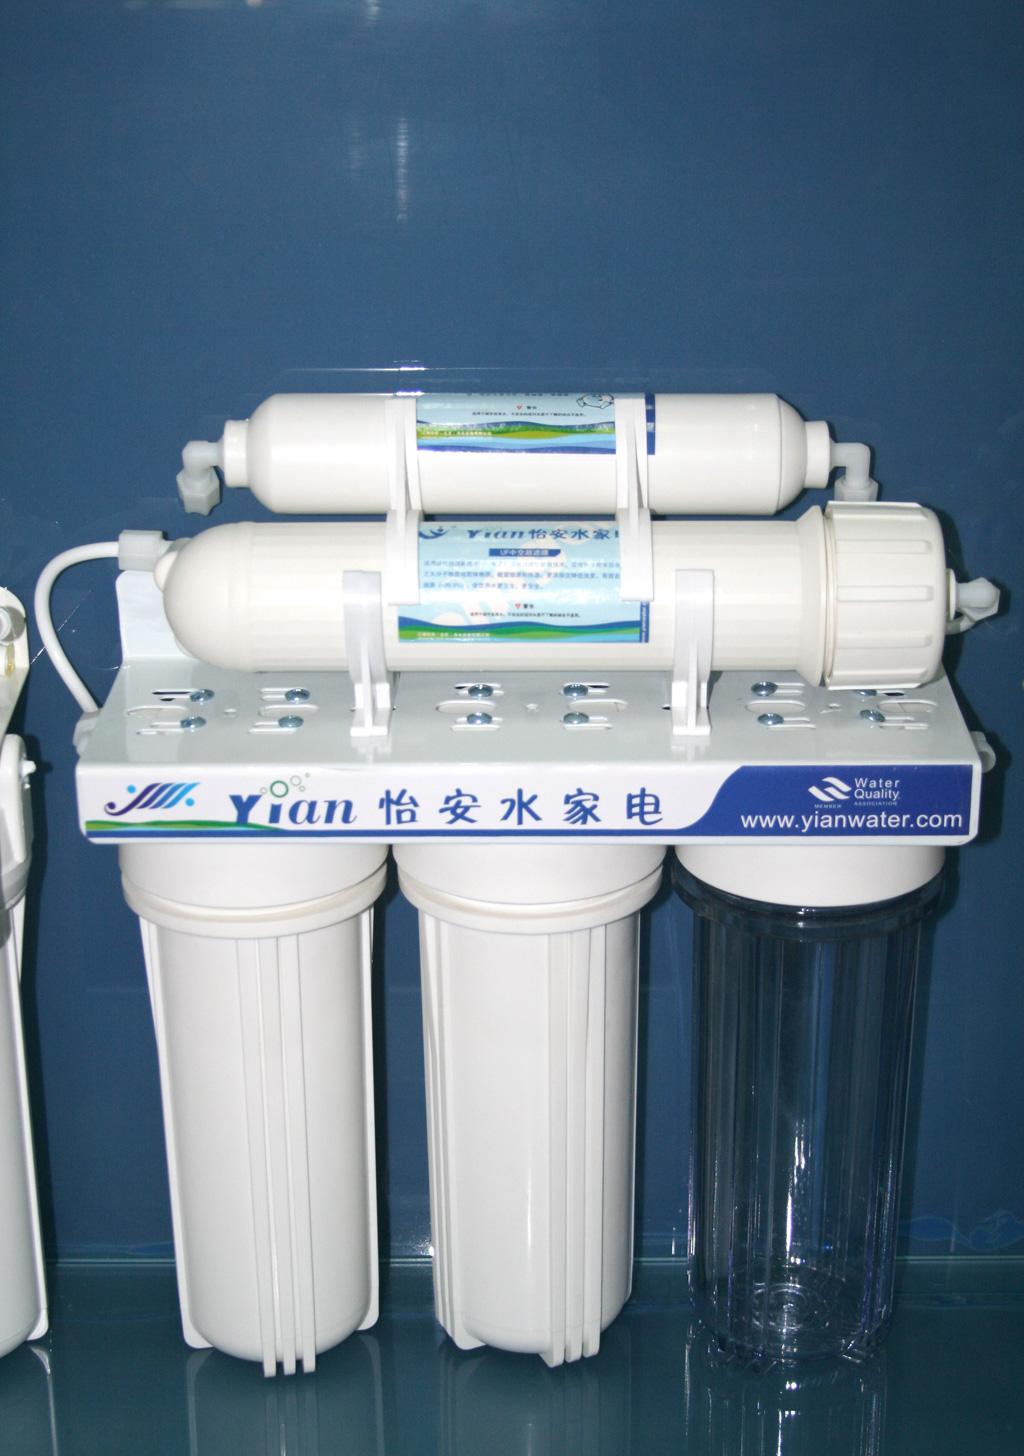 怡安Y1AN-6000-3五级净水器产品价格_图片_